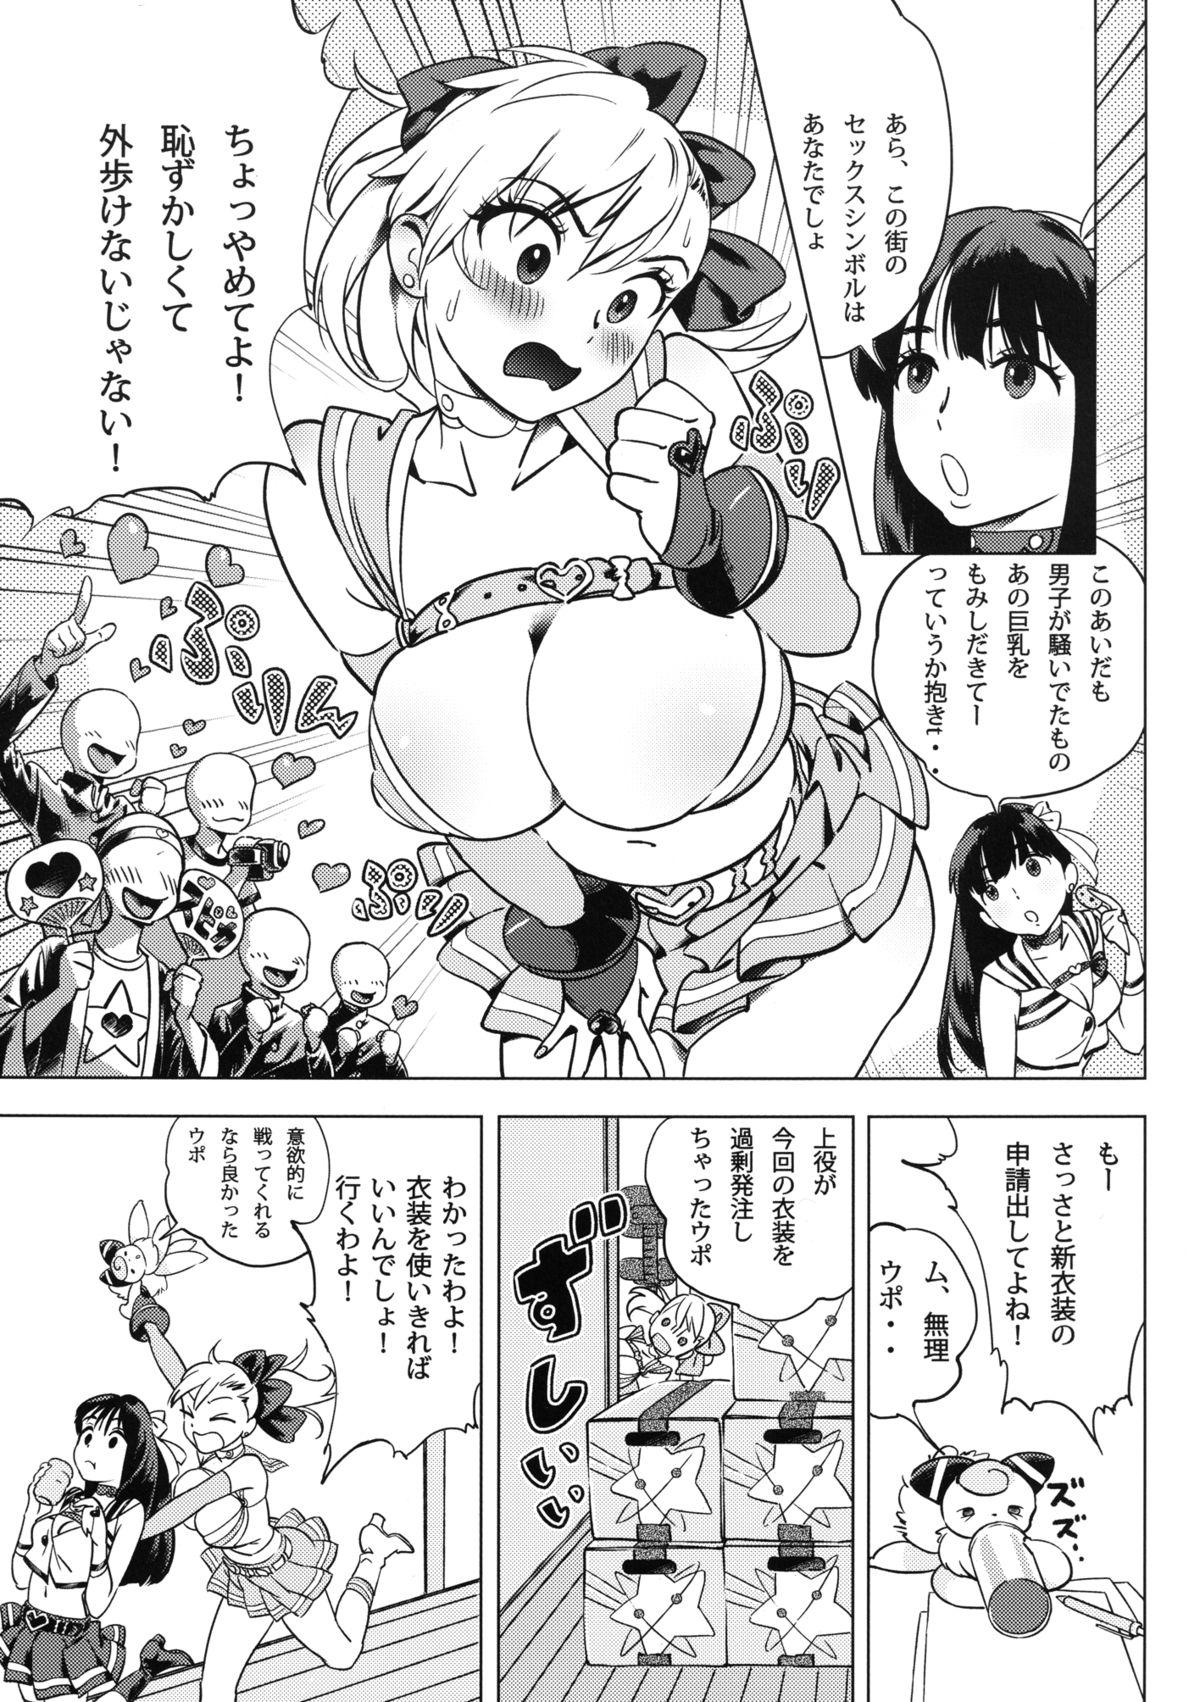 Futari wa SEXUAL HEROINE Max Heat! 3